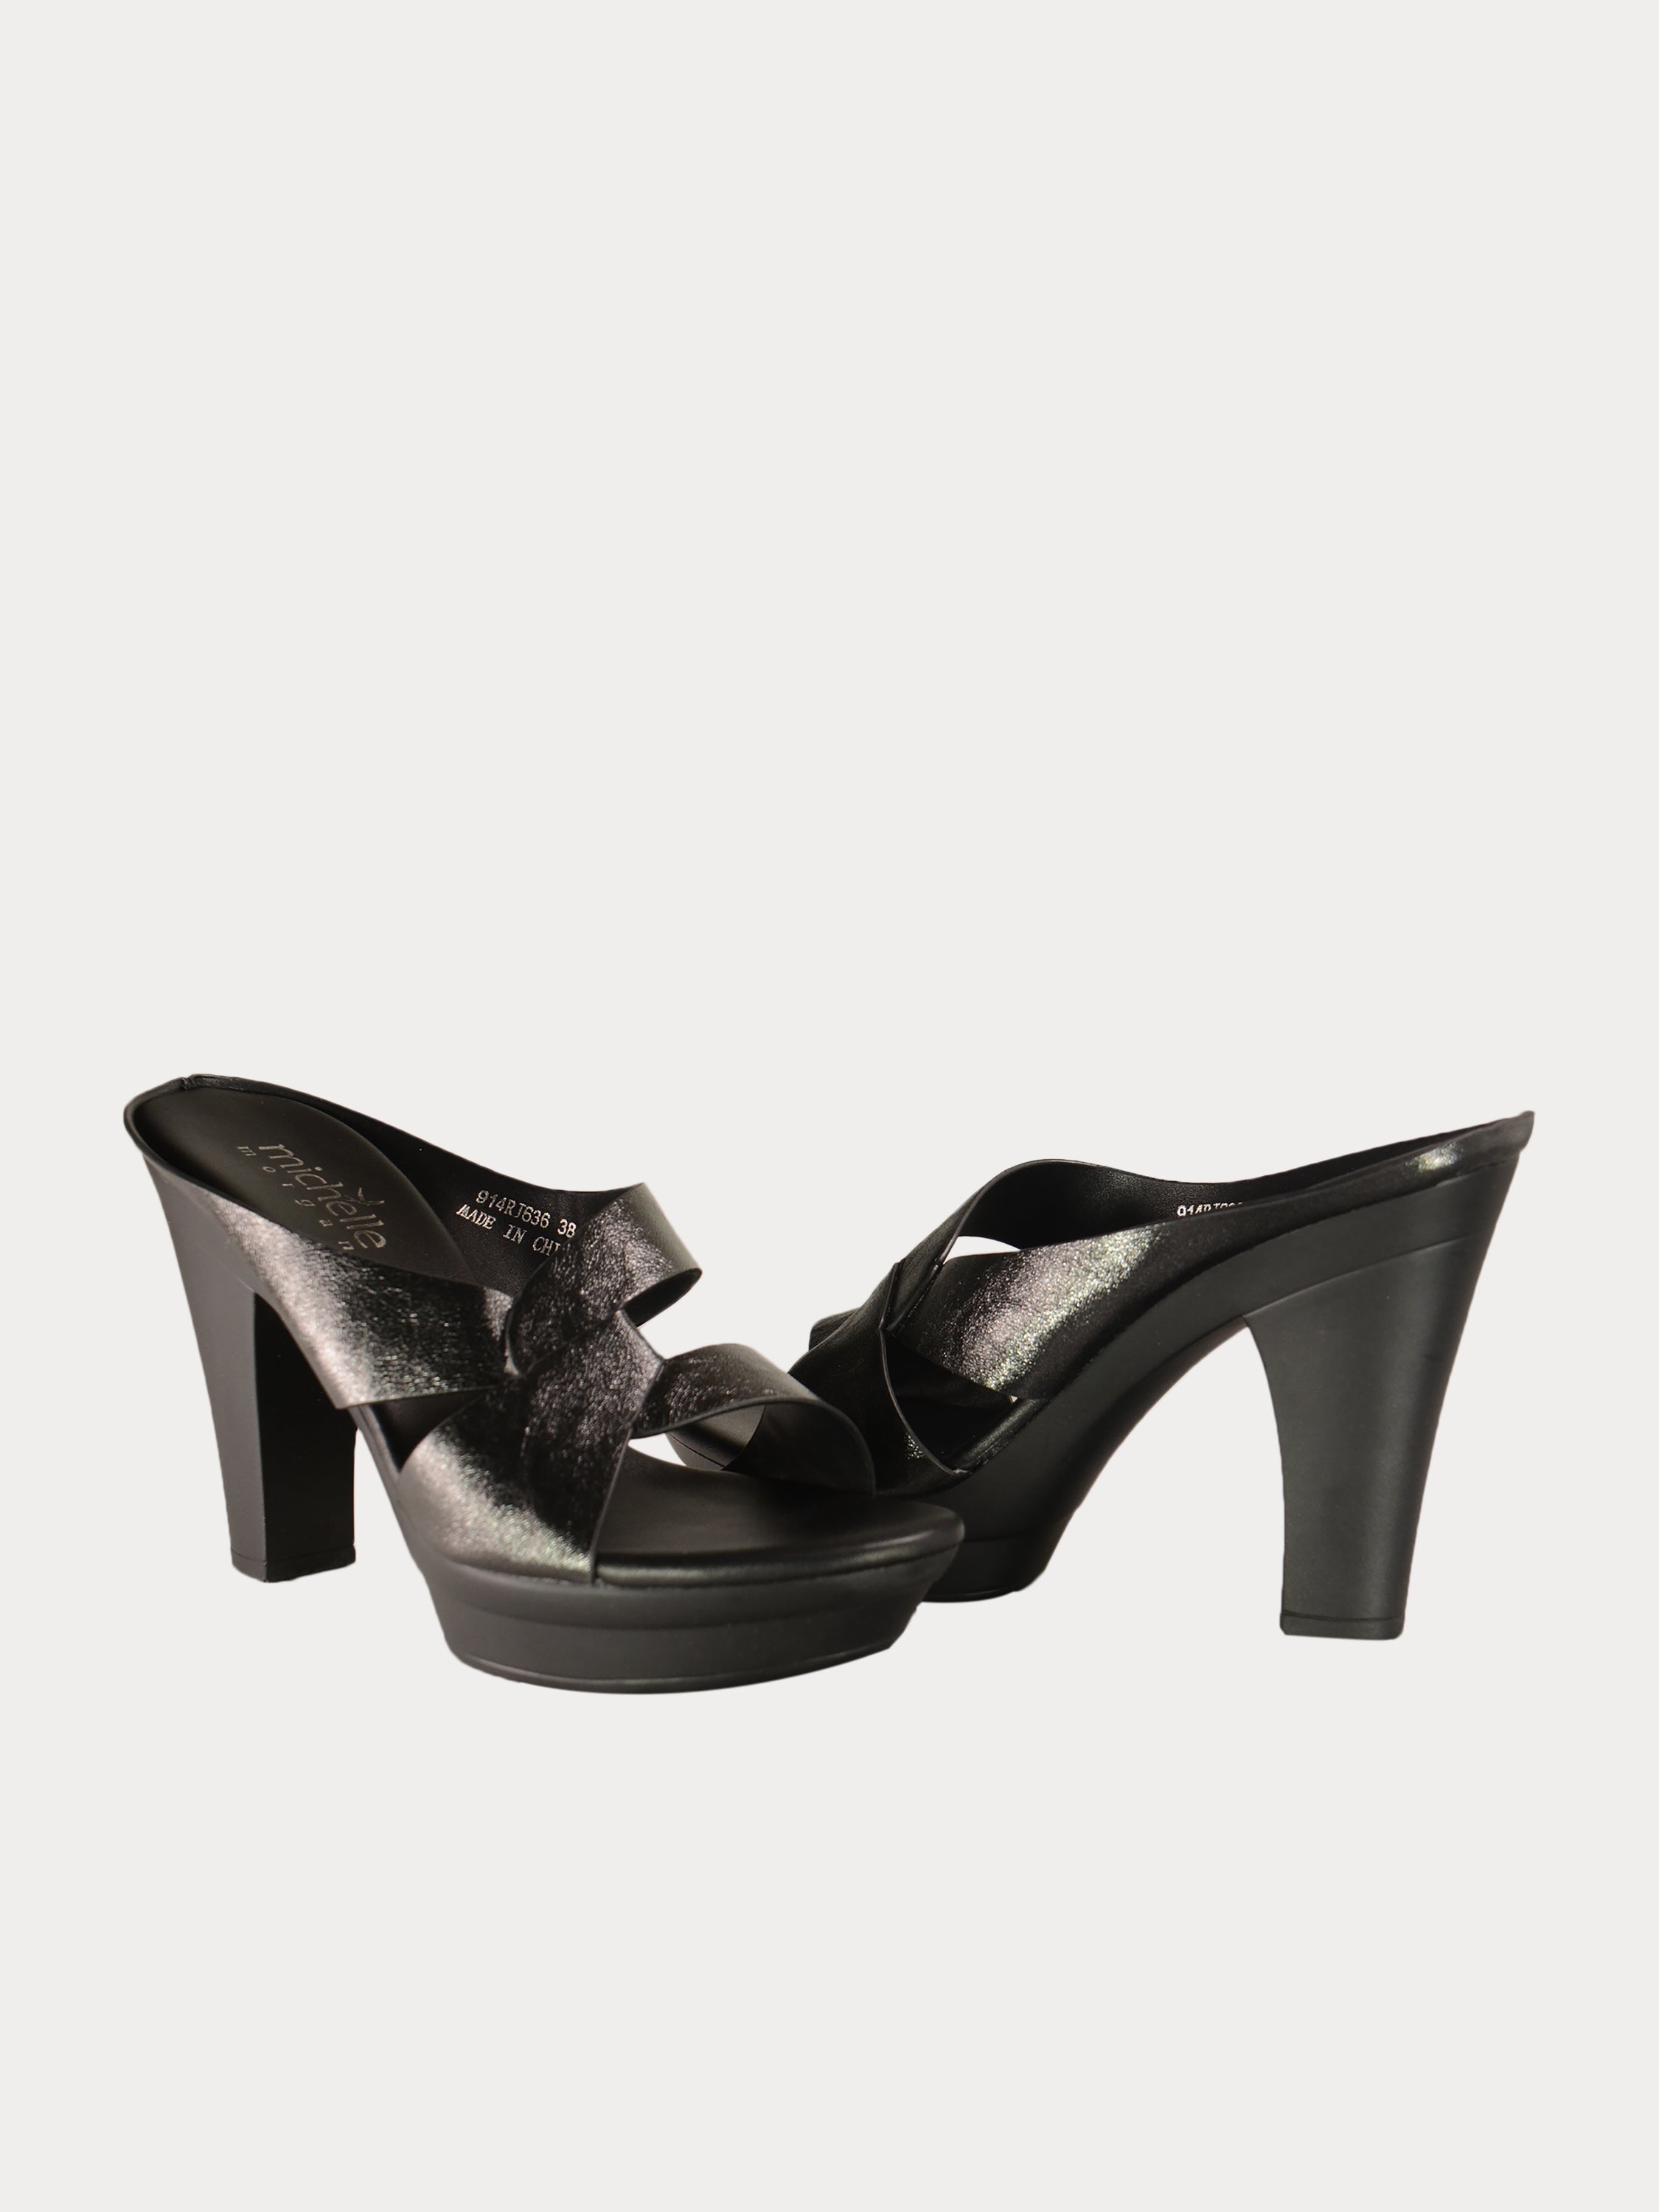 Michelle Morgan 914RJ636 Women's Brushed Heeled Sandals #color_Black